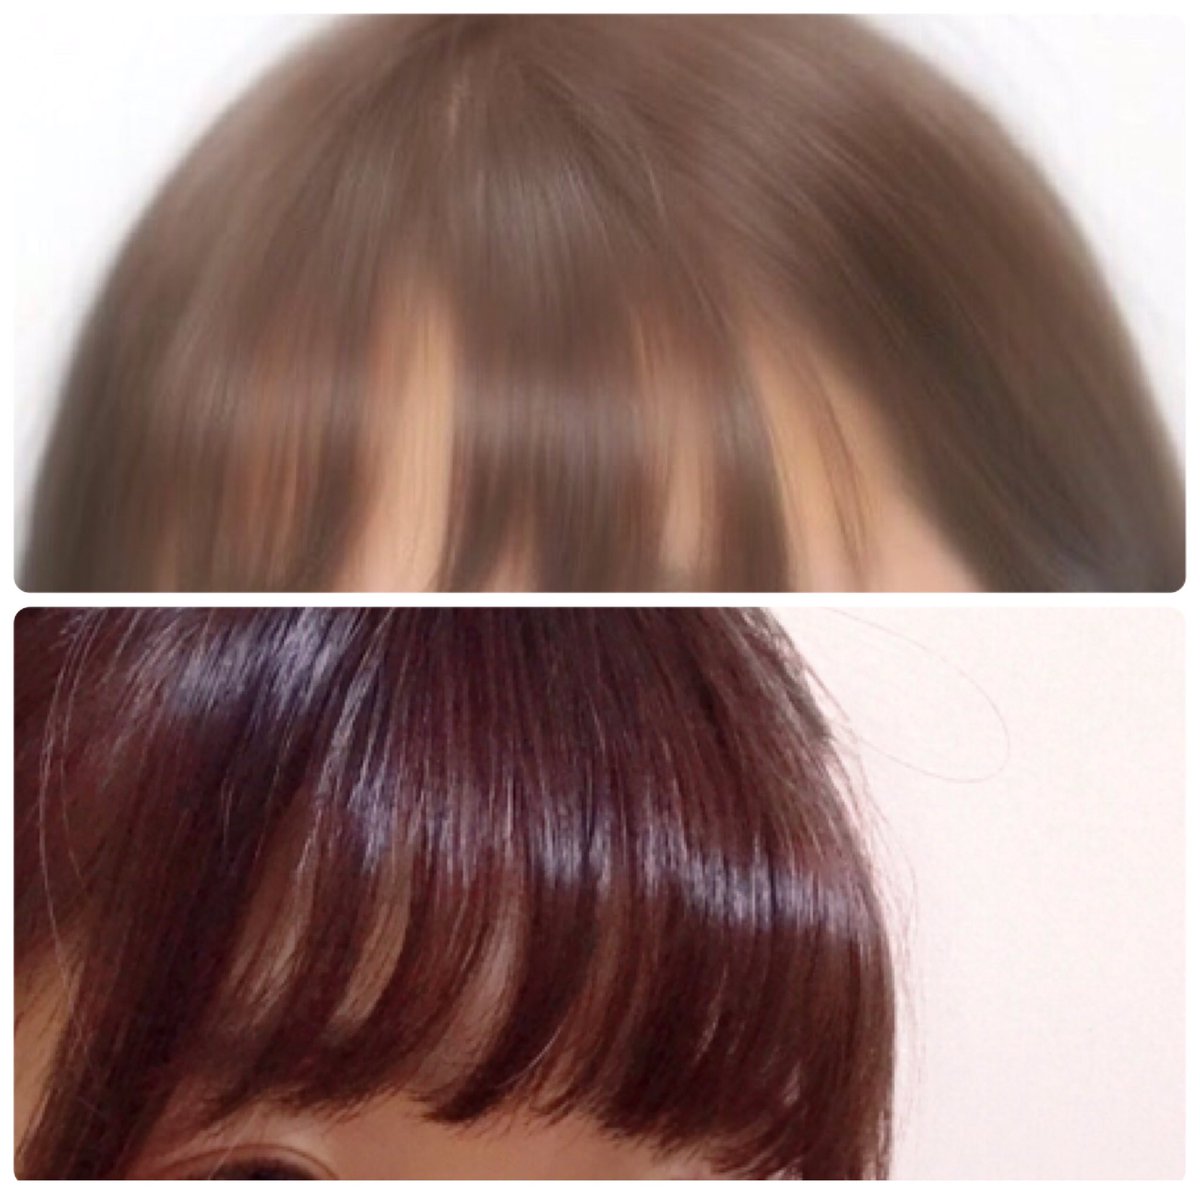 酒粕 Stylenanda 3ce Treatment Hair Tint Rosebrown 比較画像は実際の色味とは差があります トーン8程度に色抜けしたカラー済みの髪に入れると 日光下ではっきり赤とわかる赤茶になりました なにより 3日経っても髪がサラッッサラです すごい